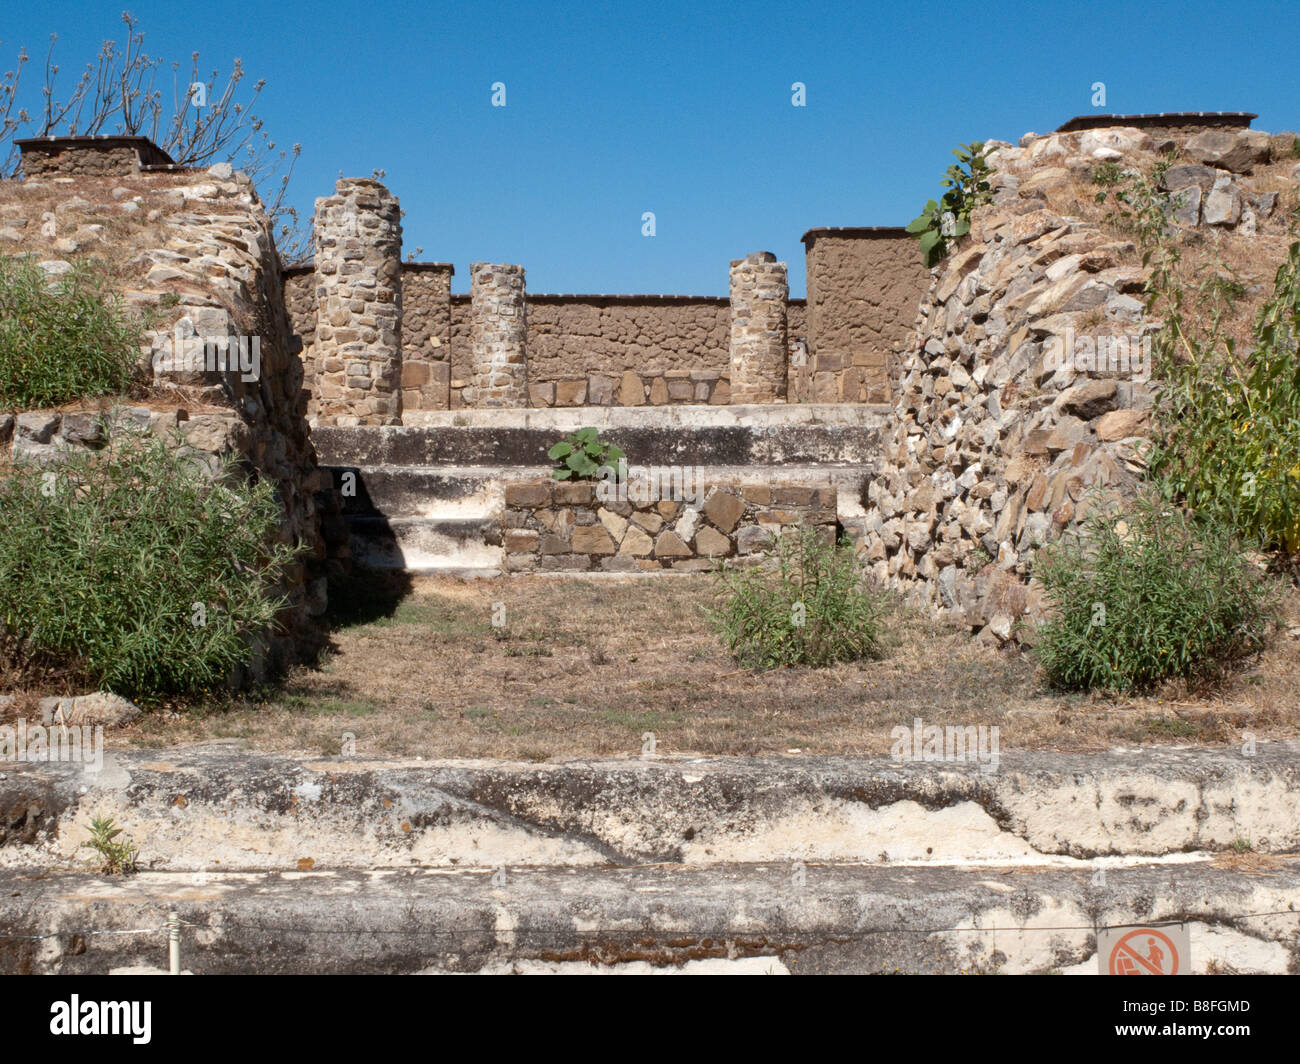 Entrée de la tombe 105 dans les ruines archéologiques de l'ancienne ville de zapotèque Monte Alban, Oaxaca, Mexique Banque D'Images